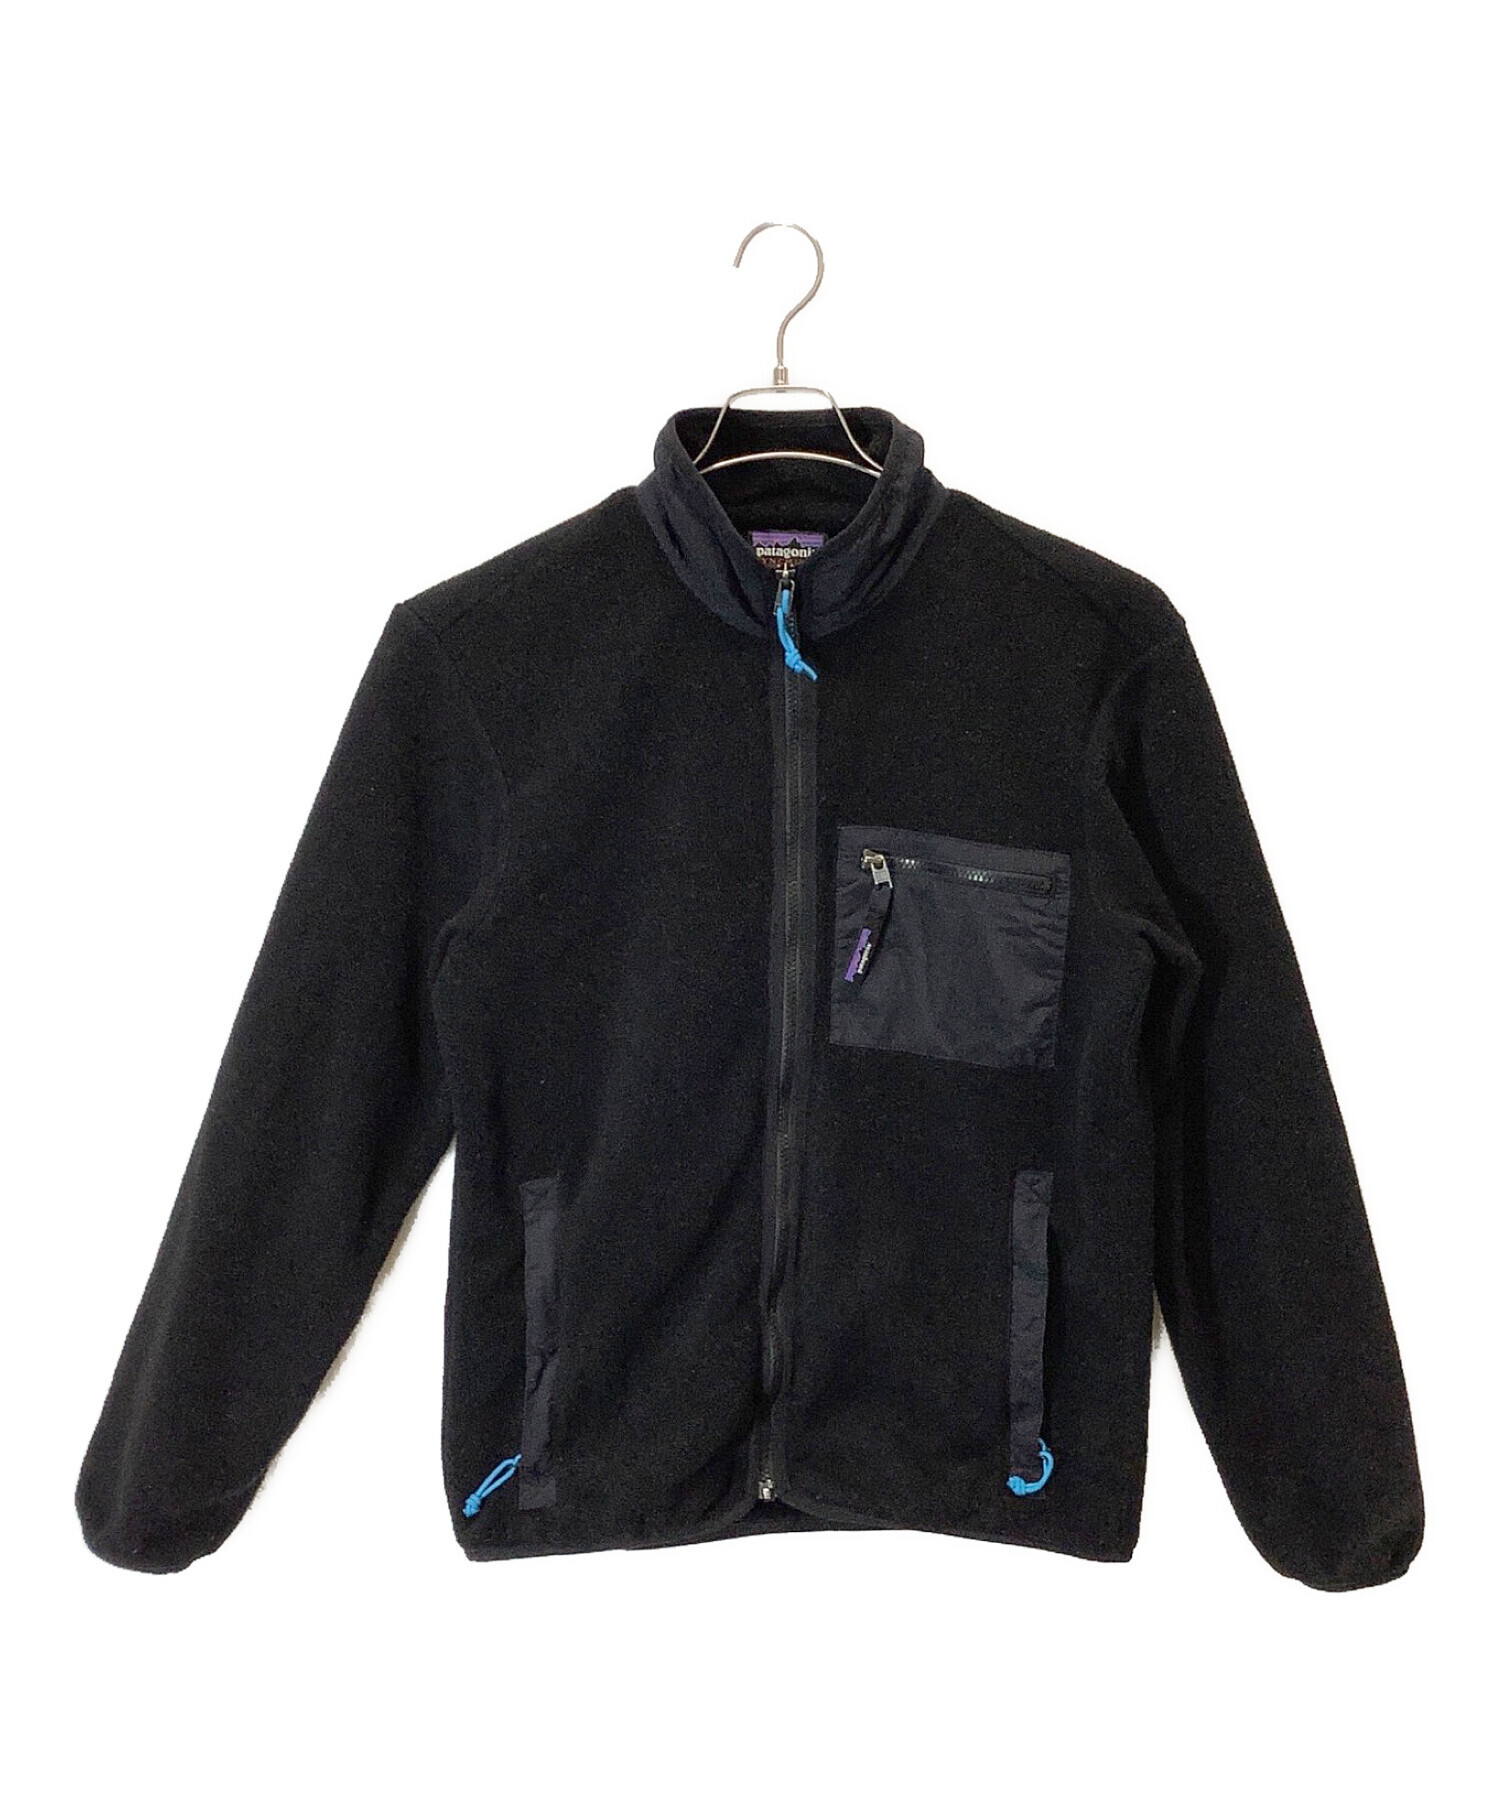 Patagonia (パタゴニア) シンチラフリースジャケット ブラック サイズ:S